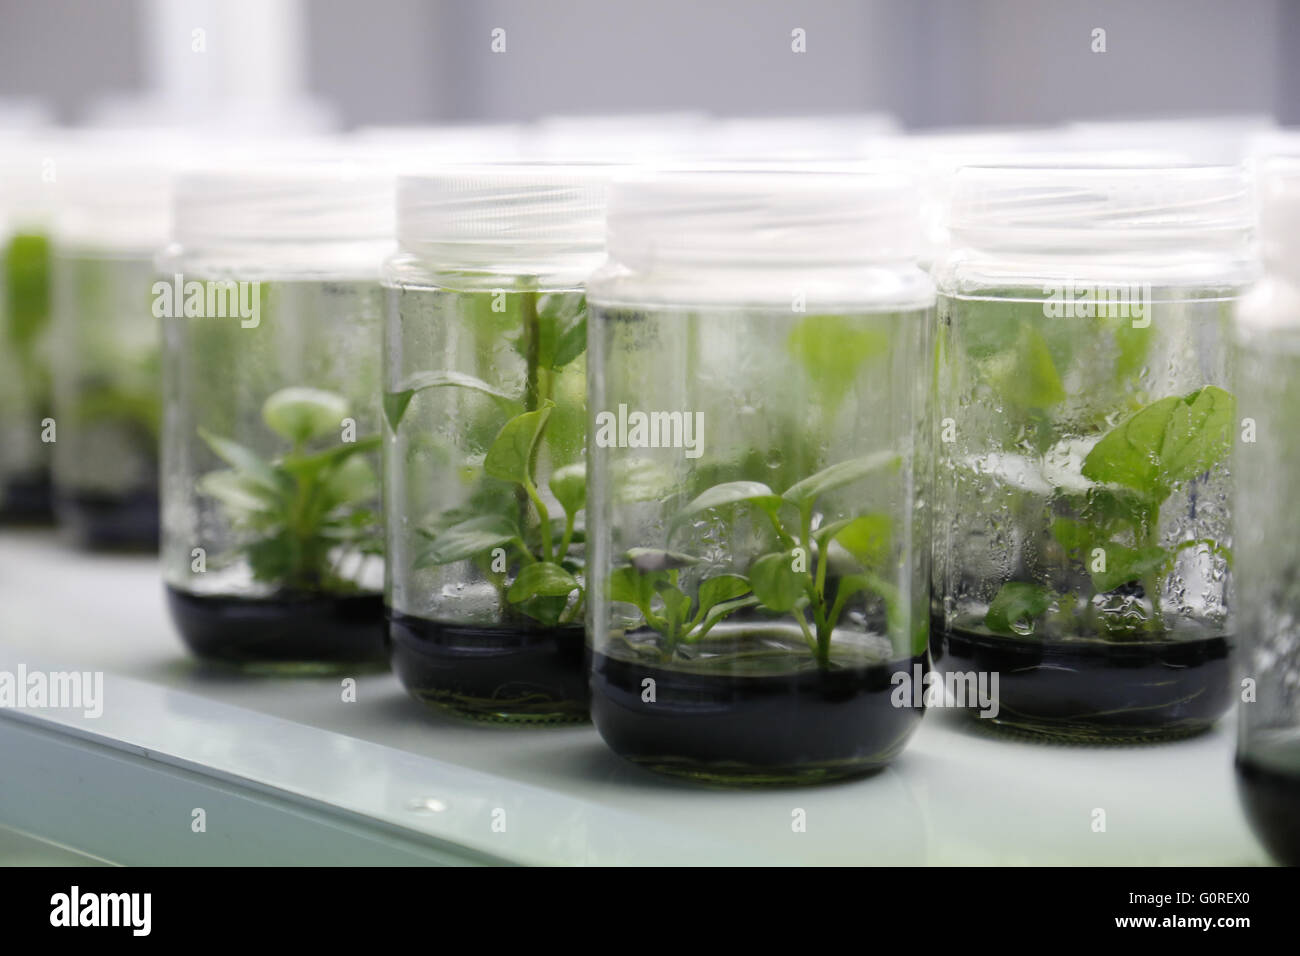 Versuchseinrichtungen in Gläsern im Labor. Wachsende Pflanze-Proben im Labor in versiegelten Becher für Tests und Forschungen. Stockfoto